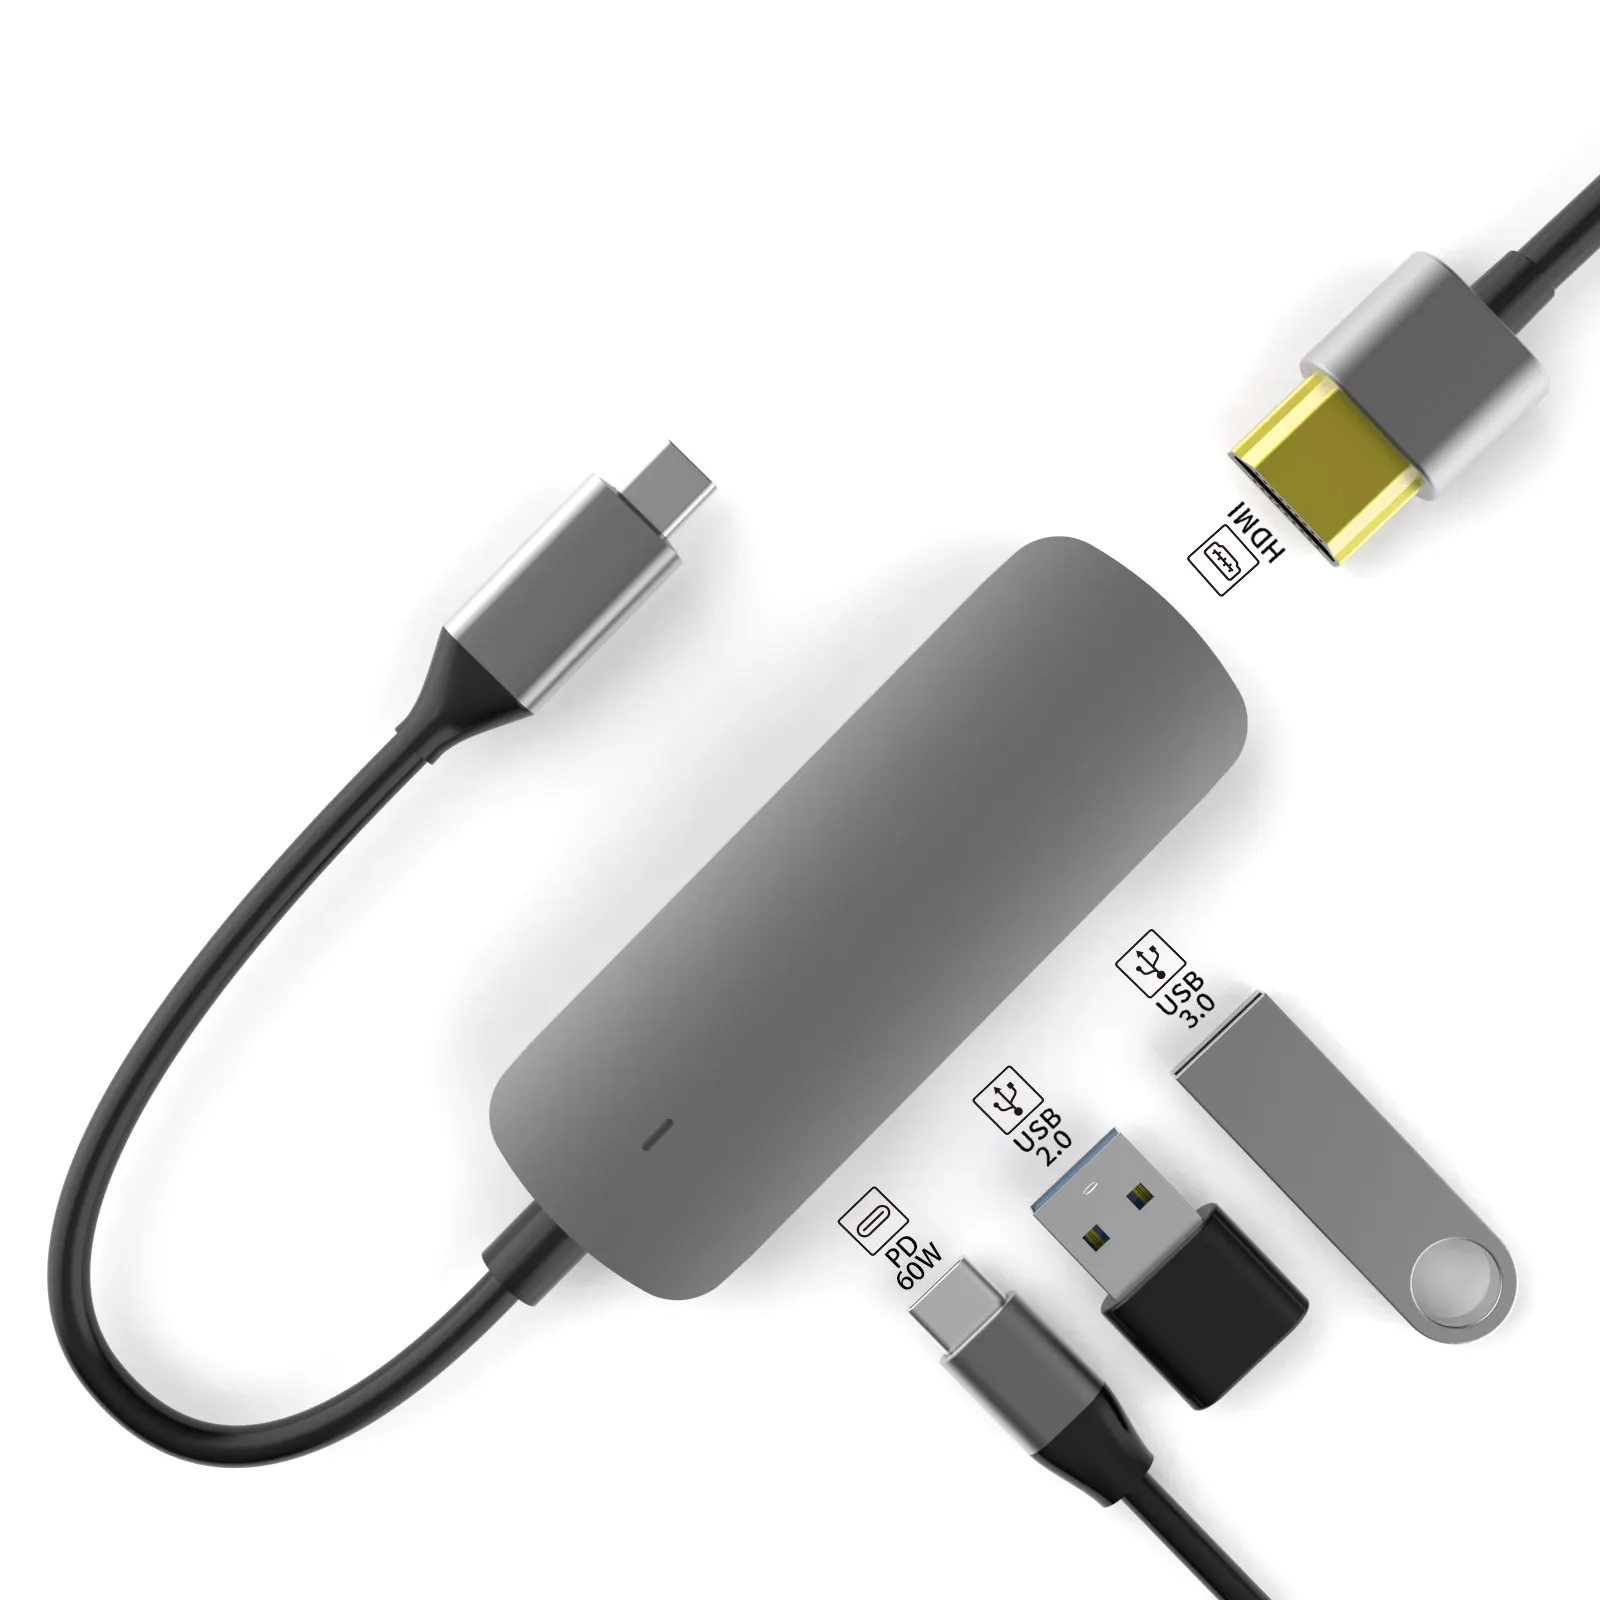 Usb adapter 4 port Type C to HD-MI USB3.0 USB2.0 PD 60W gray BASIX popular usb hubs